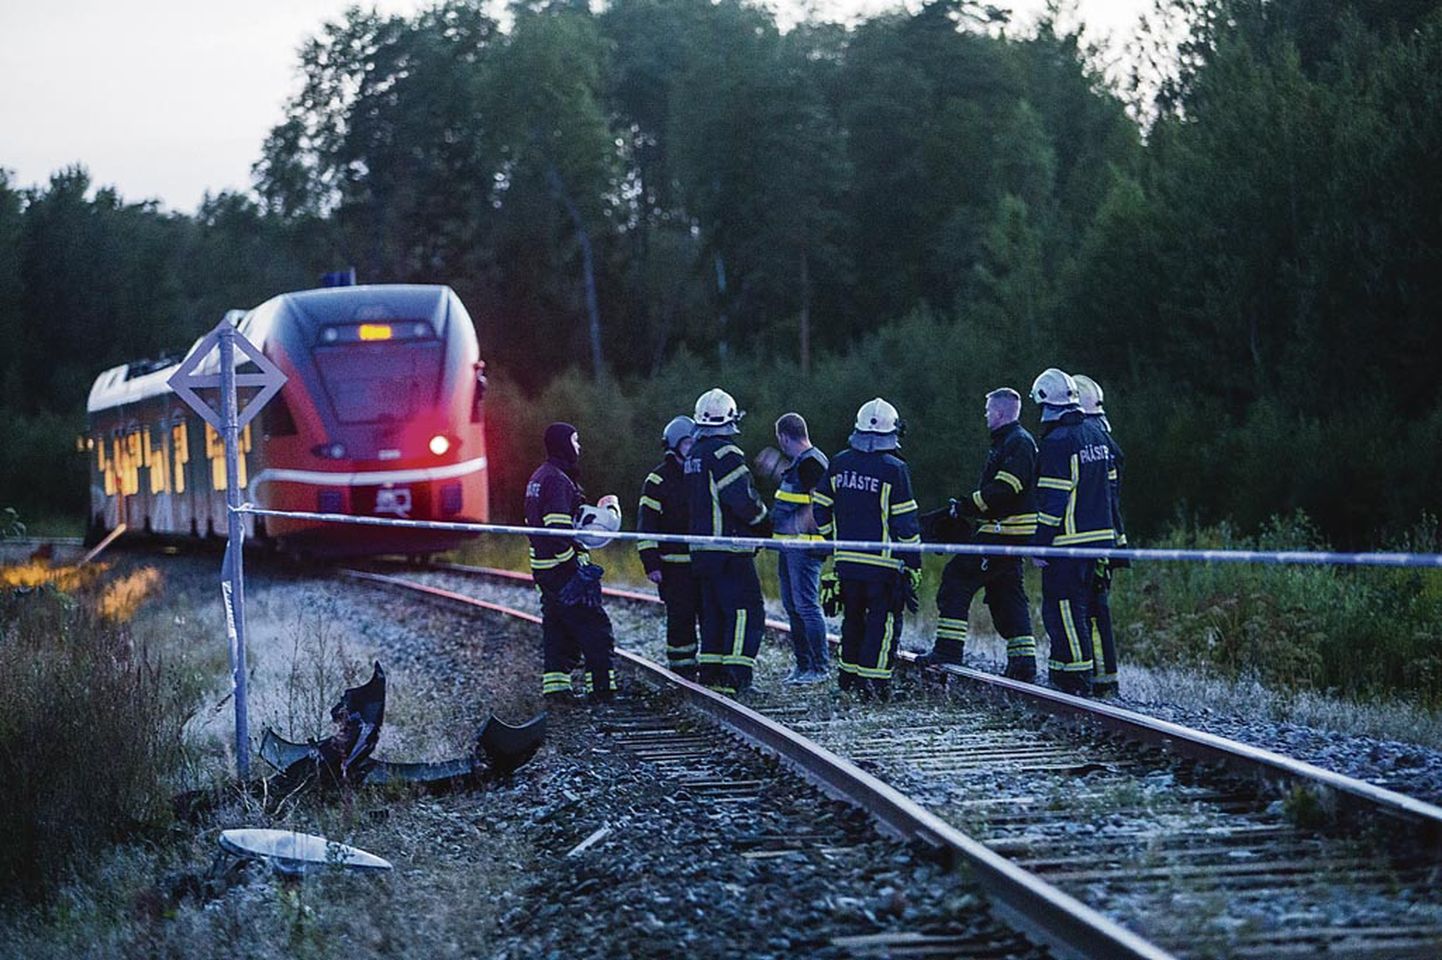 Möödunud aasta augusti teises pooles Suigu ülesõidul toimunud raskes rongi­õnnetuses kaotas elu kaks soomlannat.